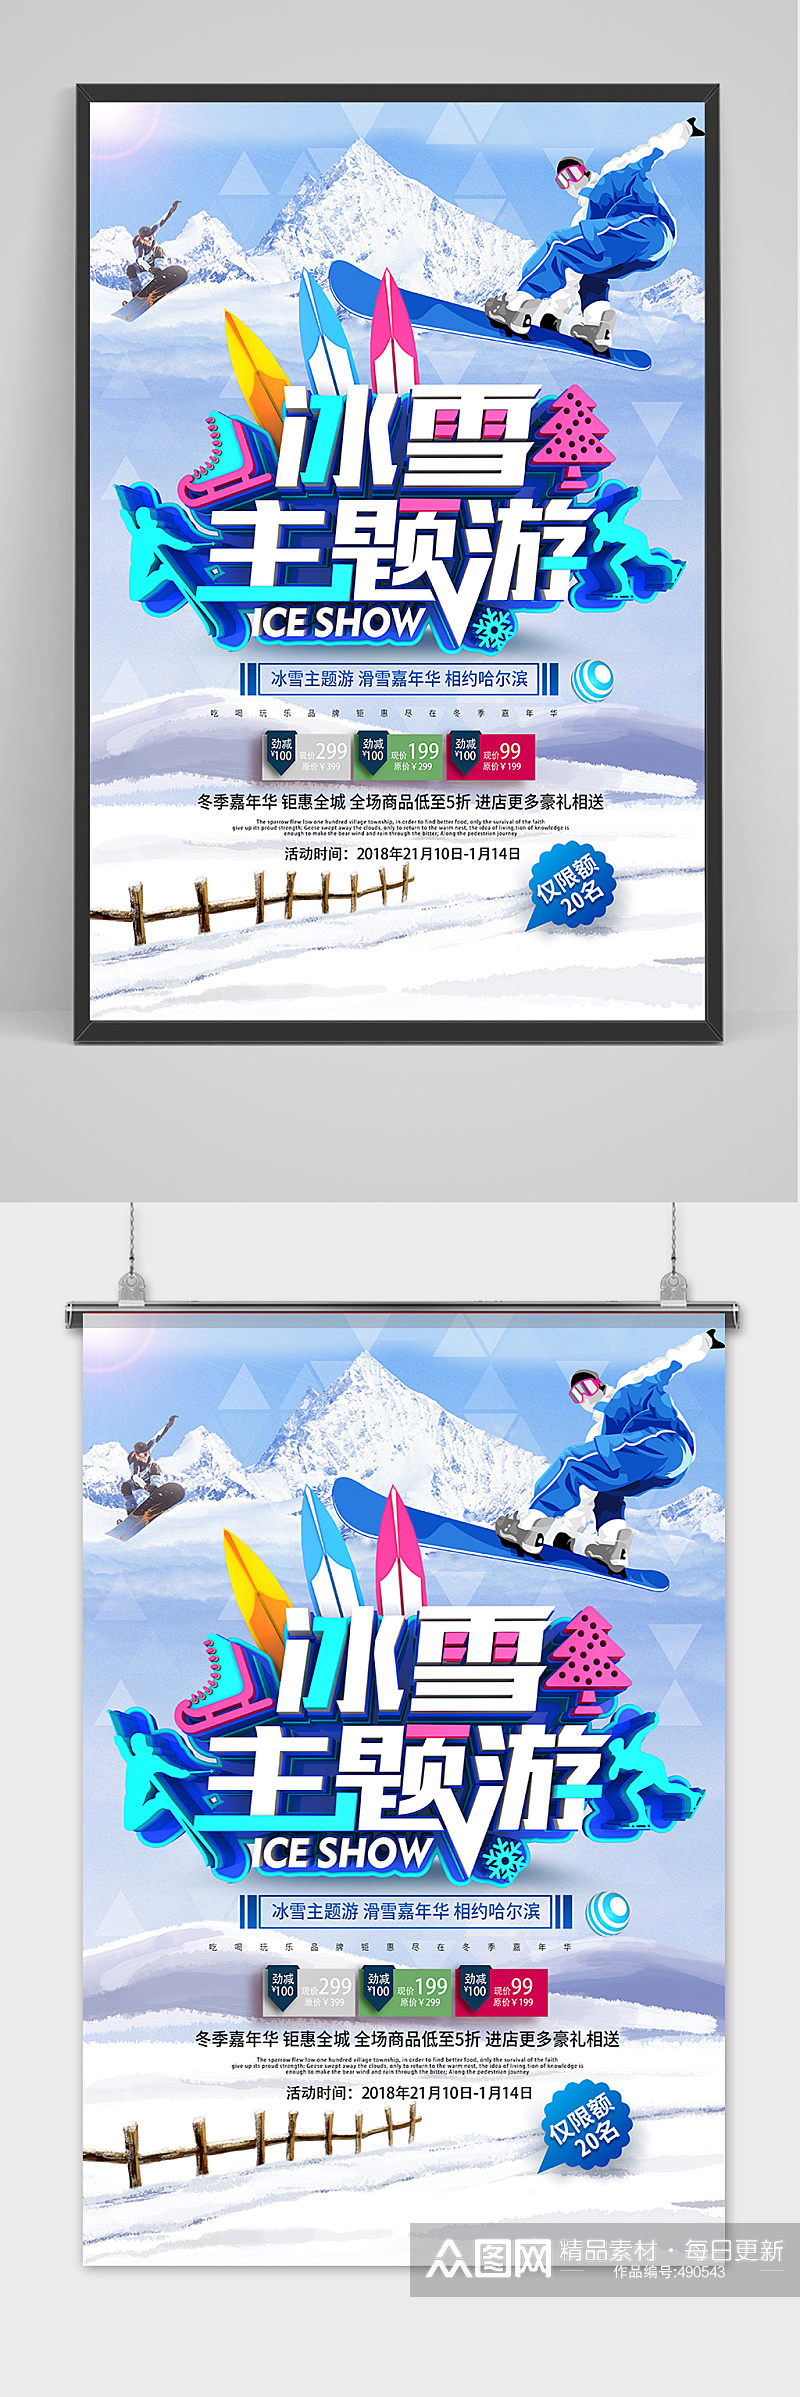 创意时尚冰雪冬季旅游海报素材